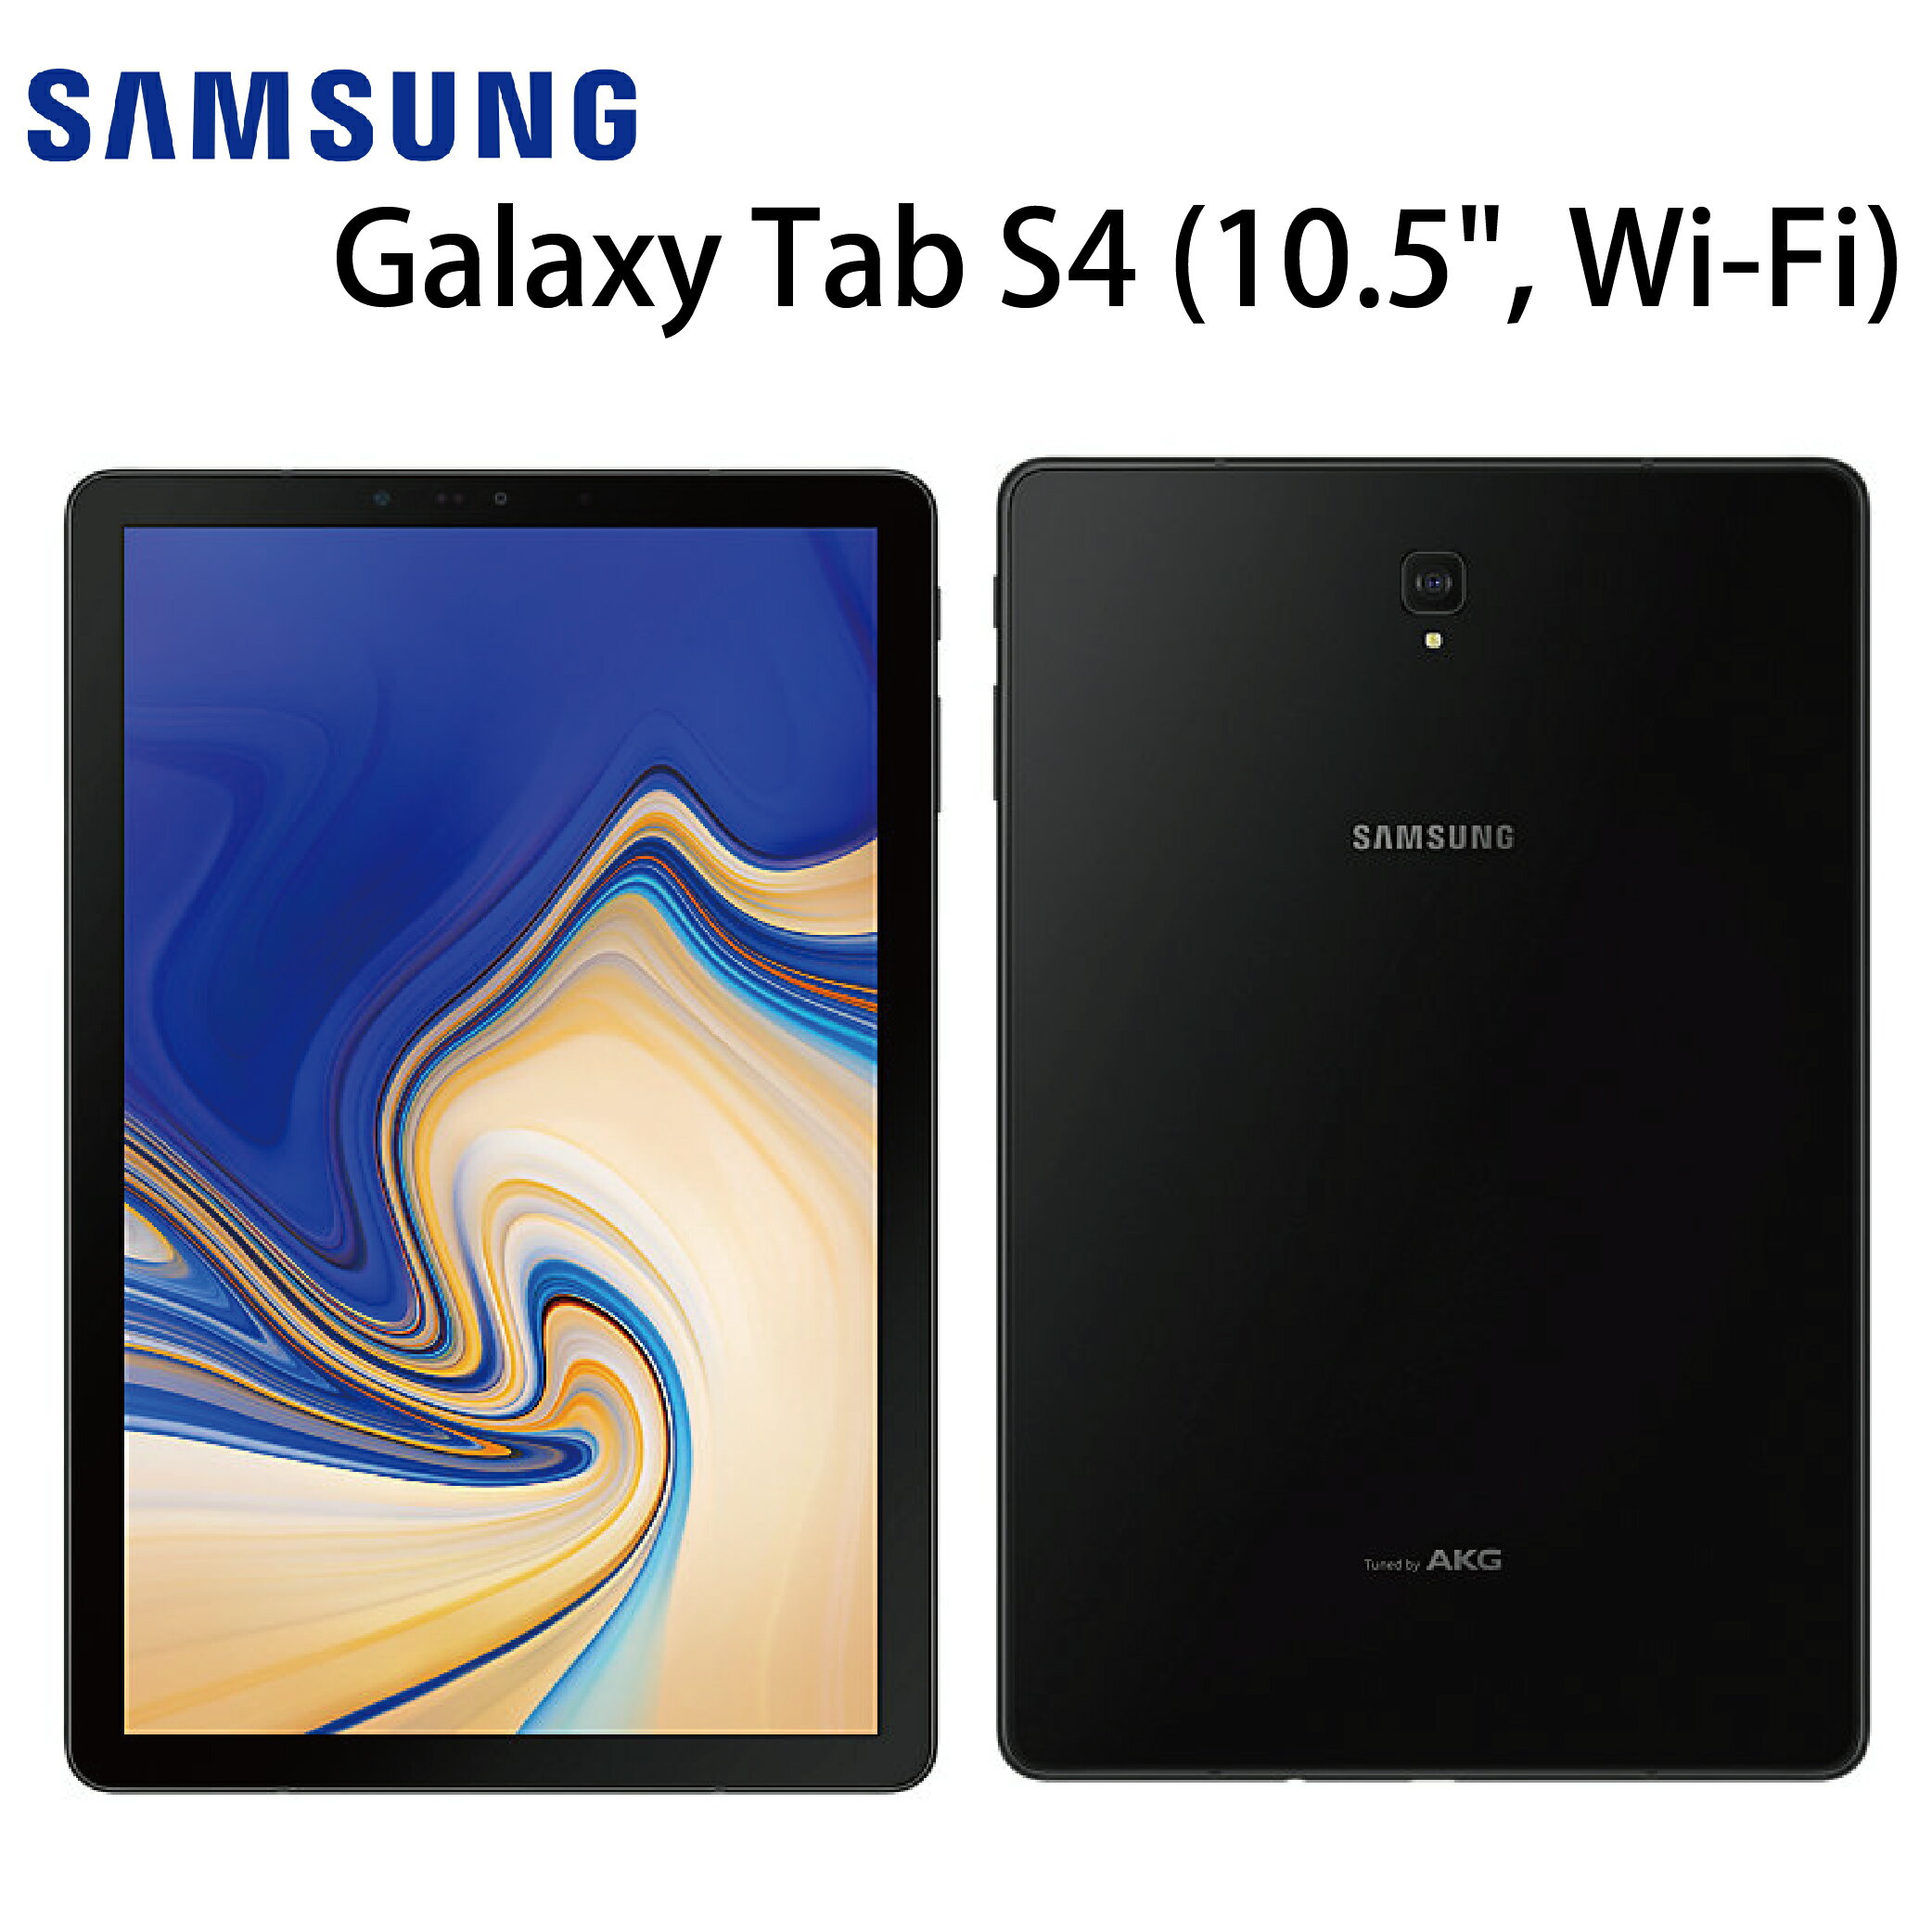 [滿3000得10%點數]三星 SAMSUNG Galaxy Tab S4 (10.5", Wi-Fi)-黑《贈原廠皮套+一般亮面保貼》